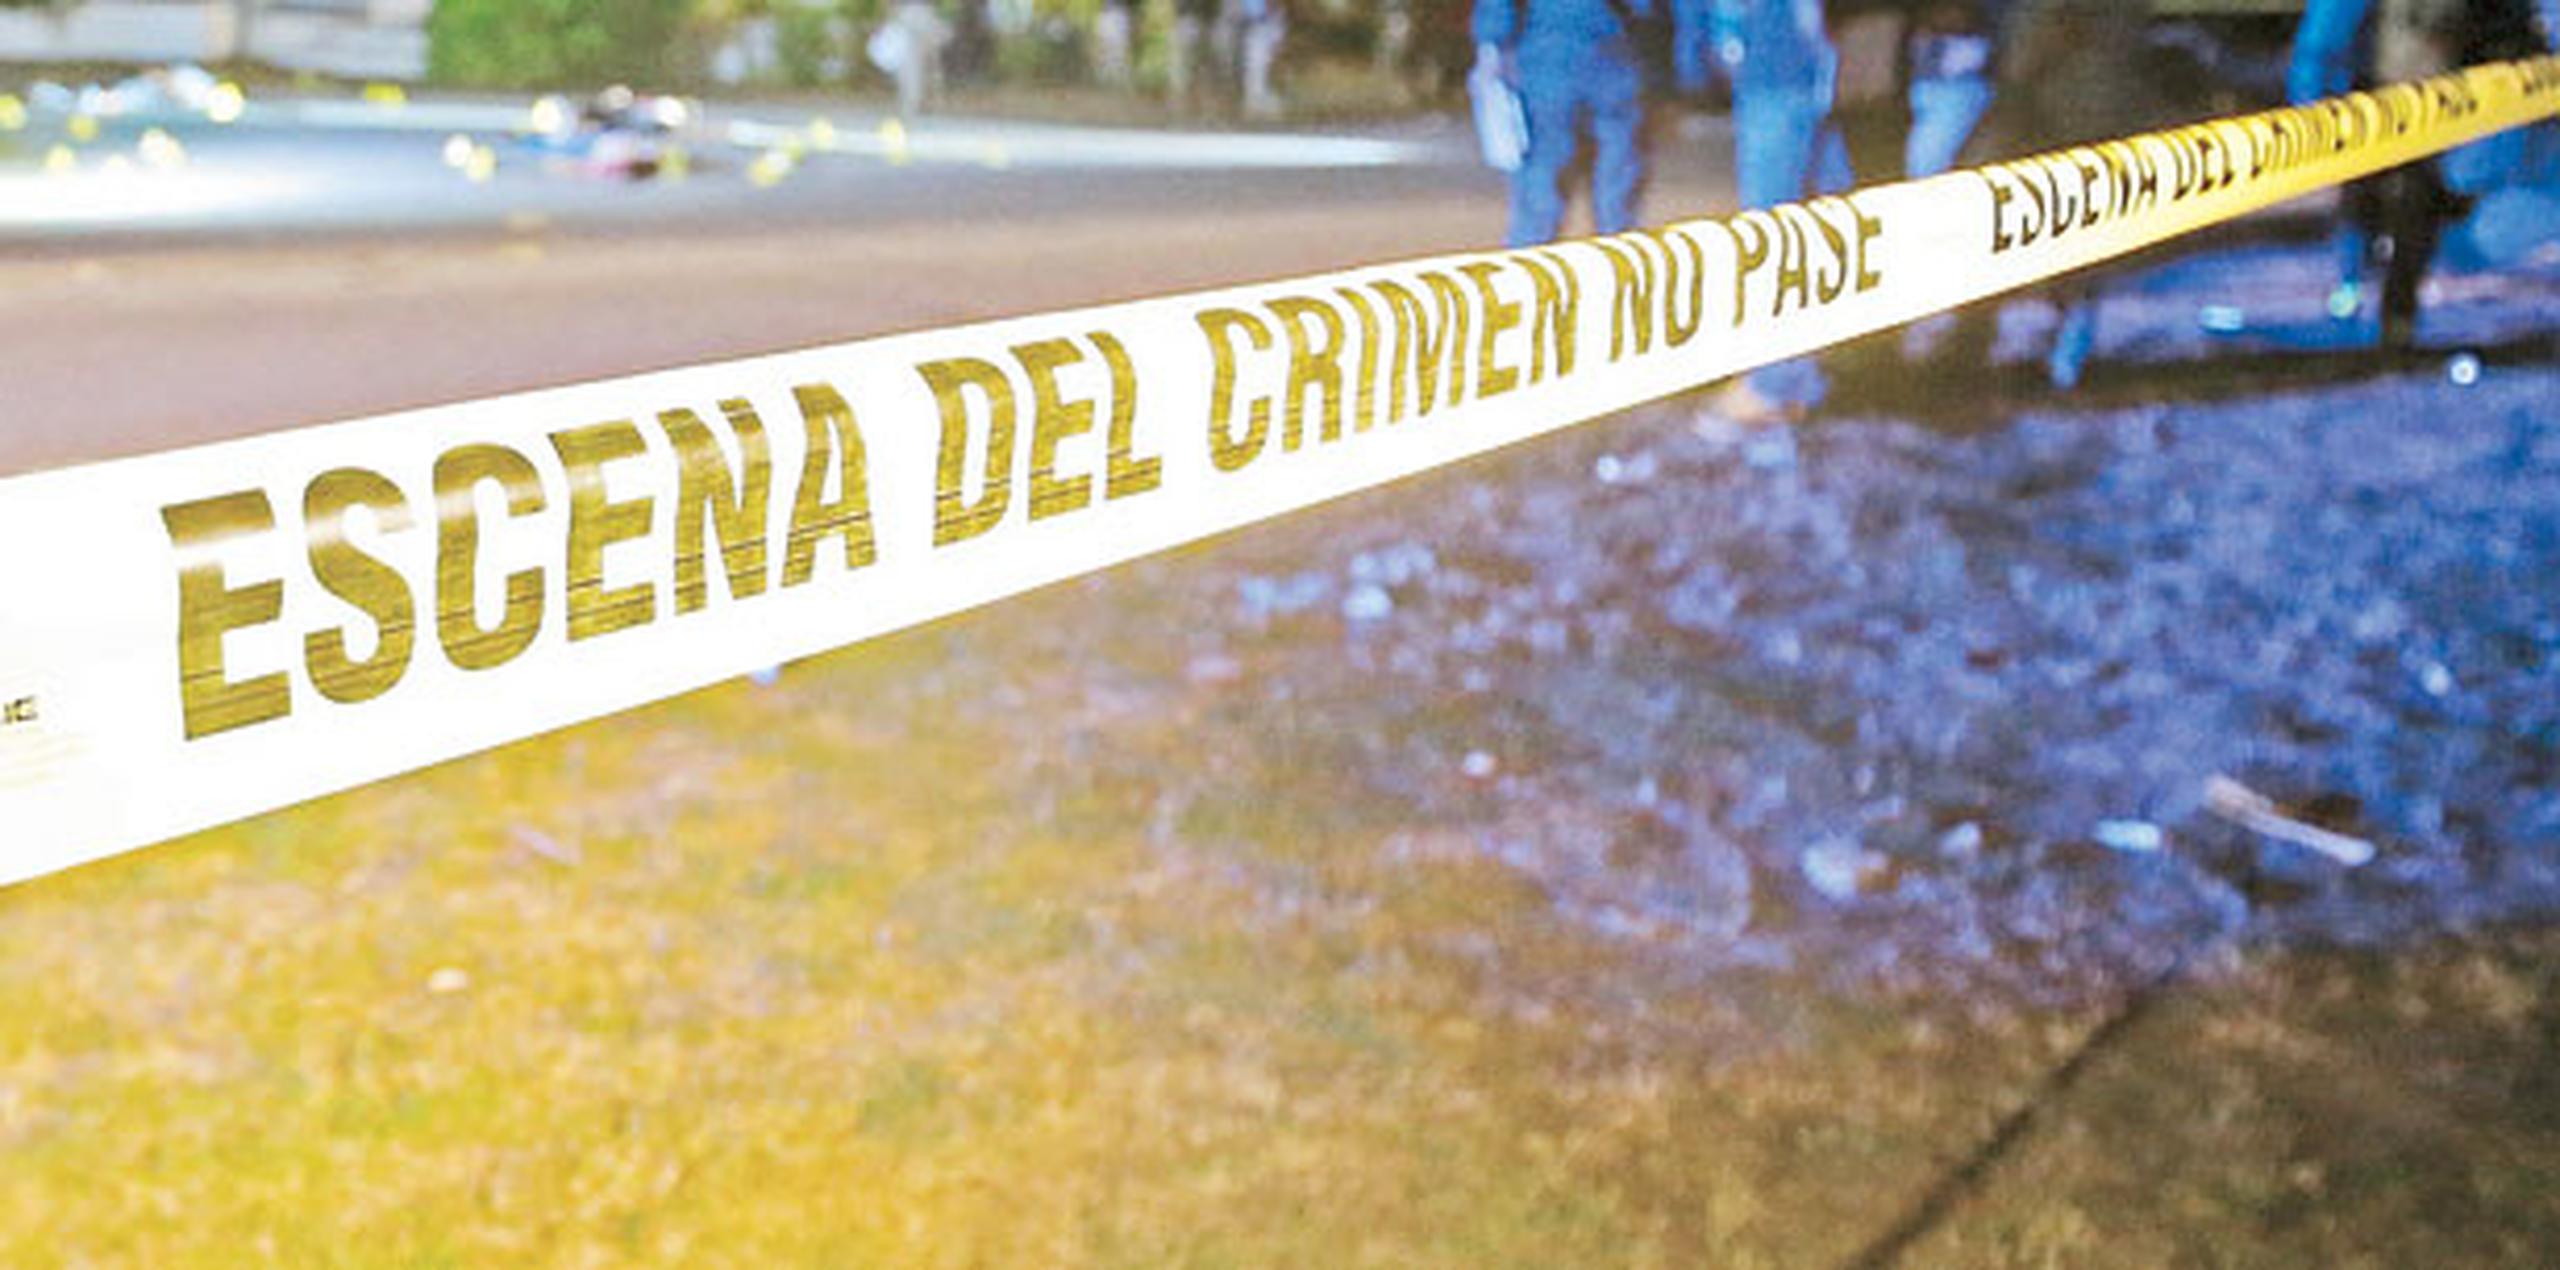 El agresor, identificado como Pedro Ángel González Pérez, huyó de la escena. (Archivo)